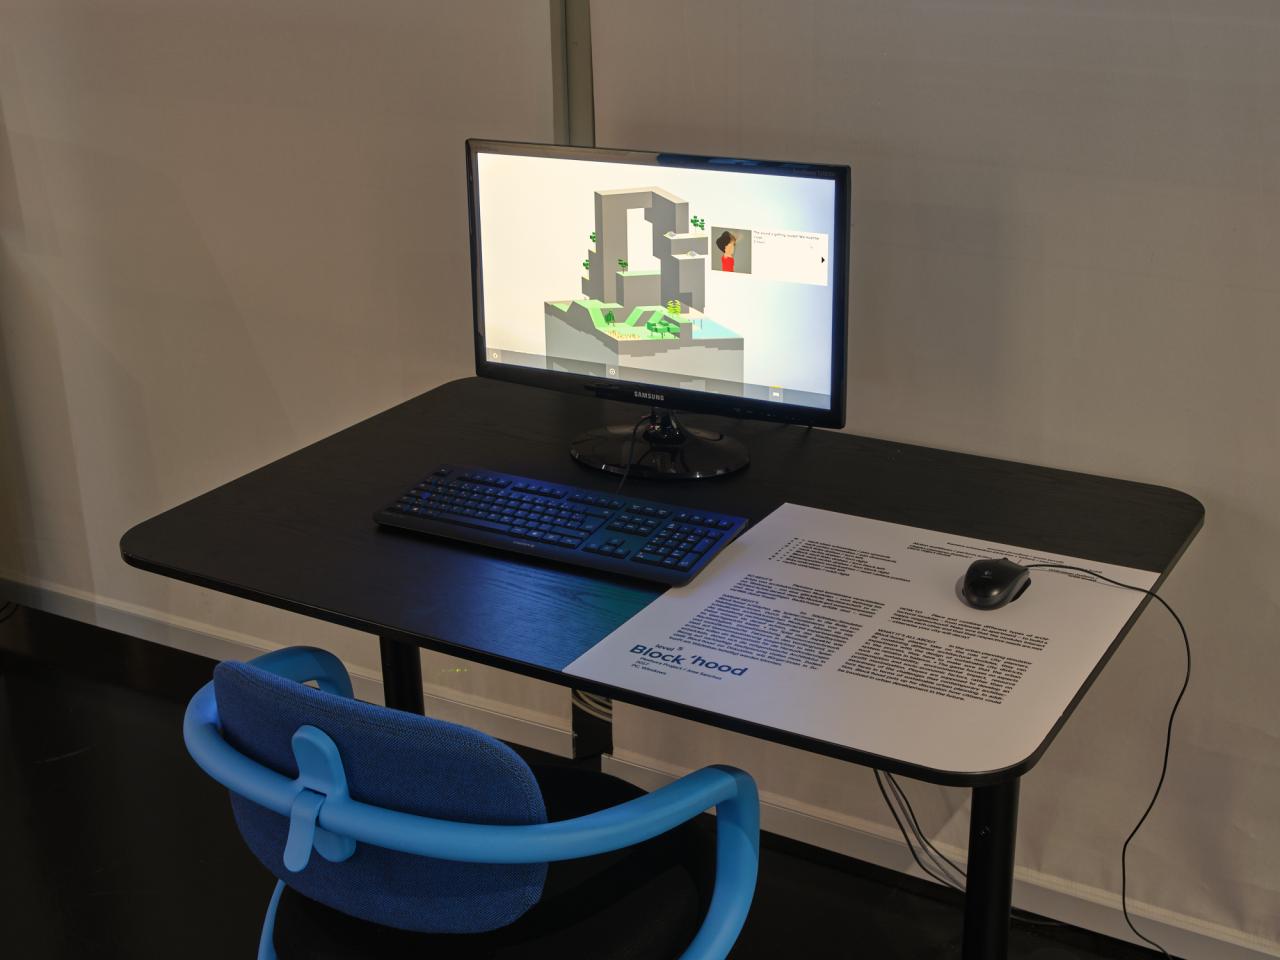 Ein blauer Stuhl steht vor einem Schreibtisch. Auf diesem Tisch steht ein Computerbildschirm mit angeschlossener Tastatur und Maus. Das Computerspiel »Block’hood« wird auf dem Bildschirm ausgespielt.